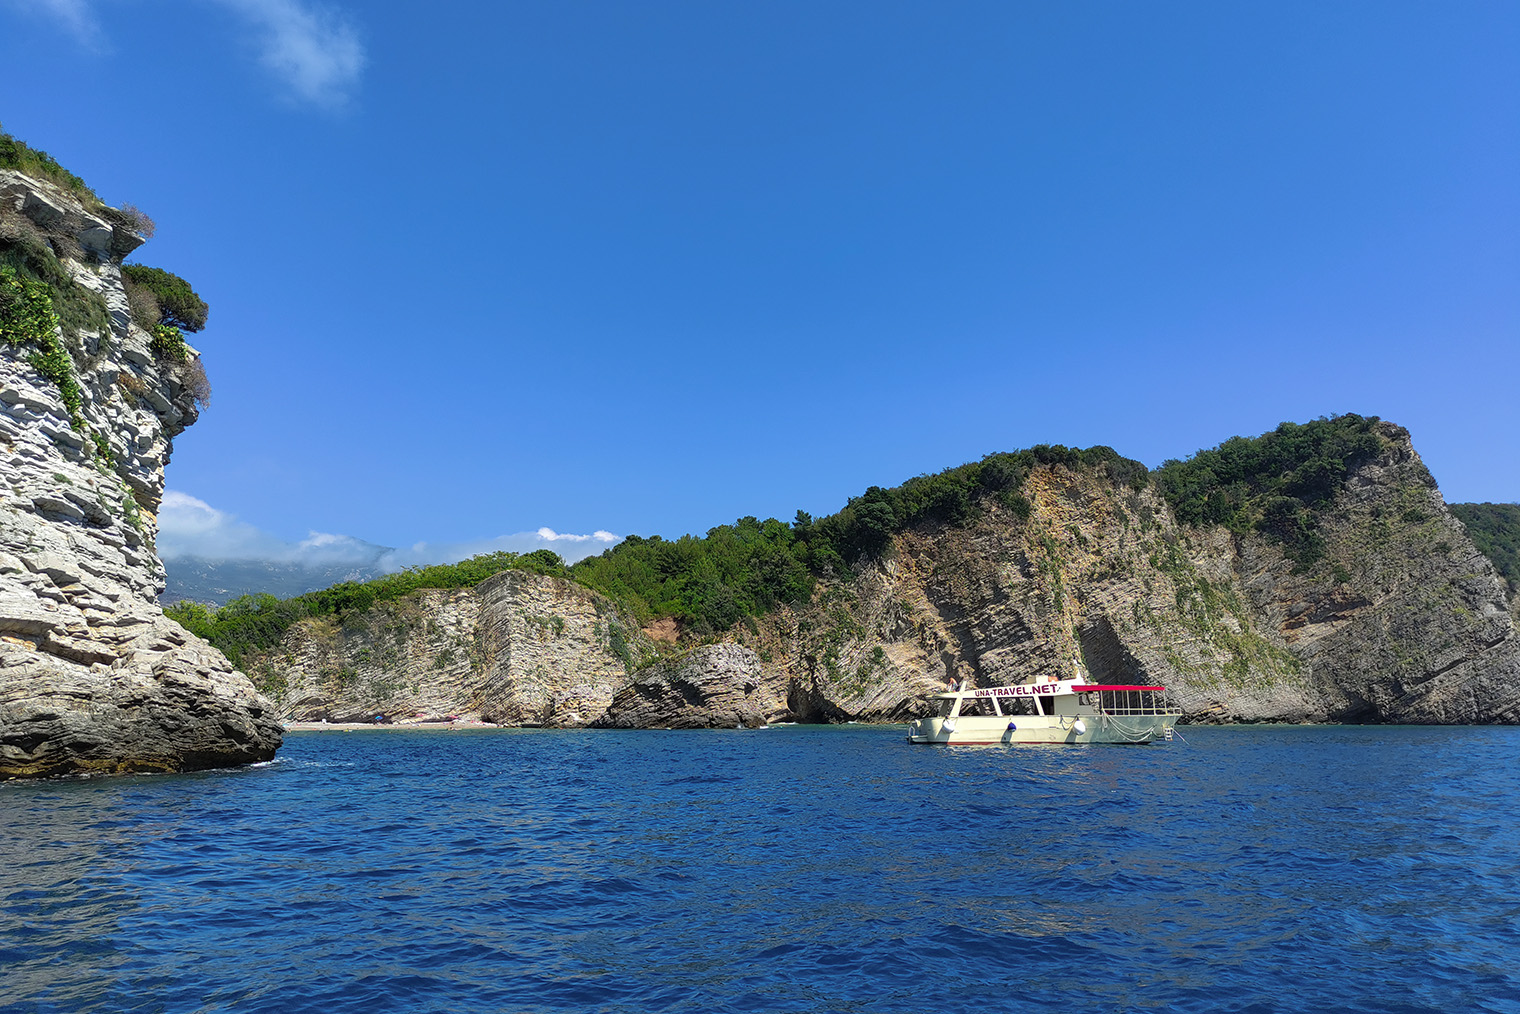 Летом много туристов катаются на лодках, а для местных это способ заработка